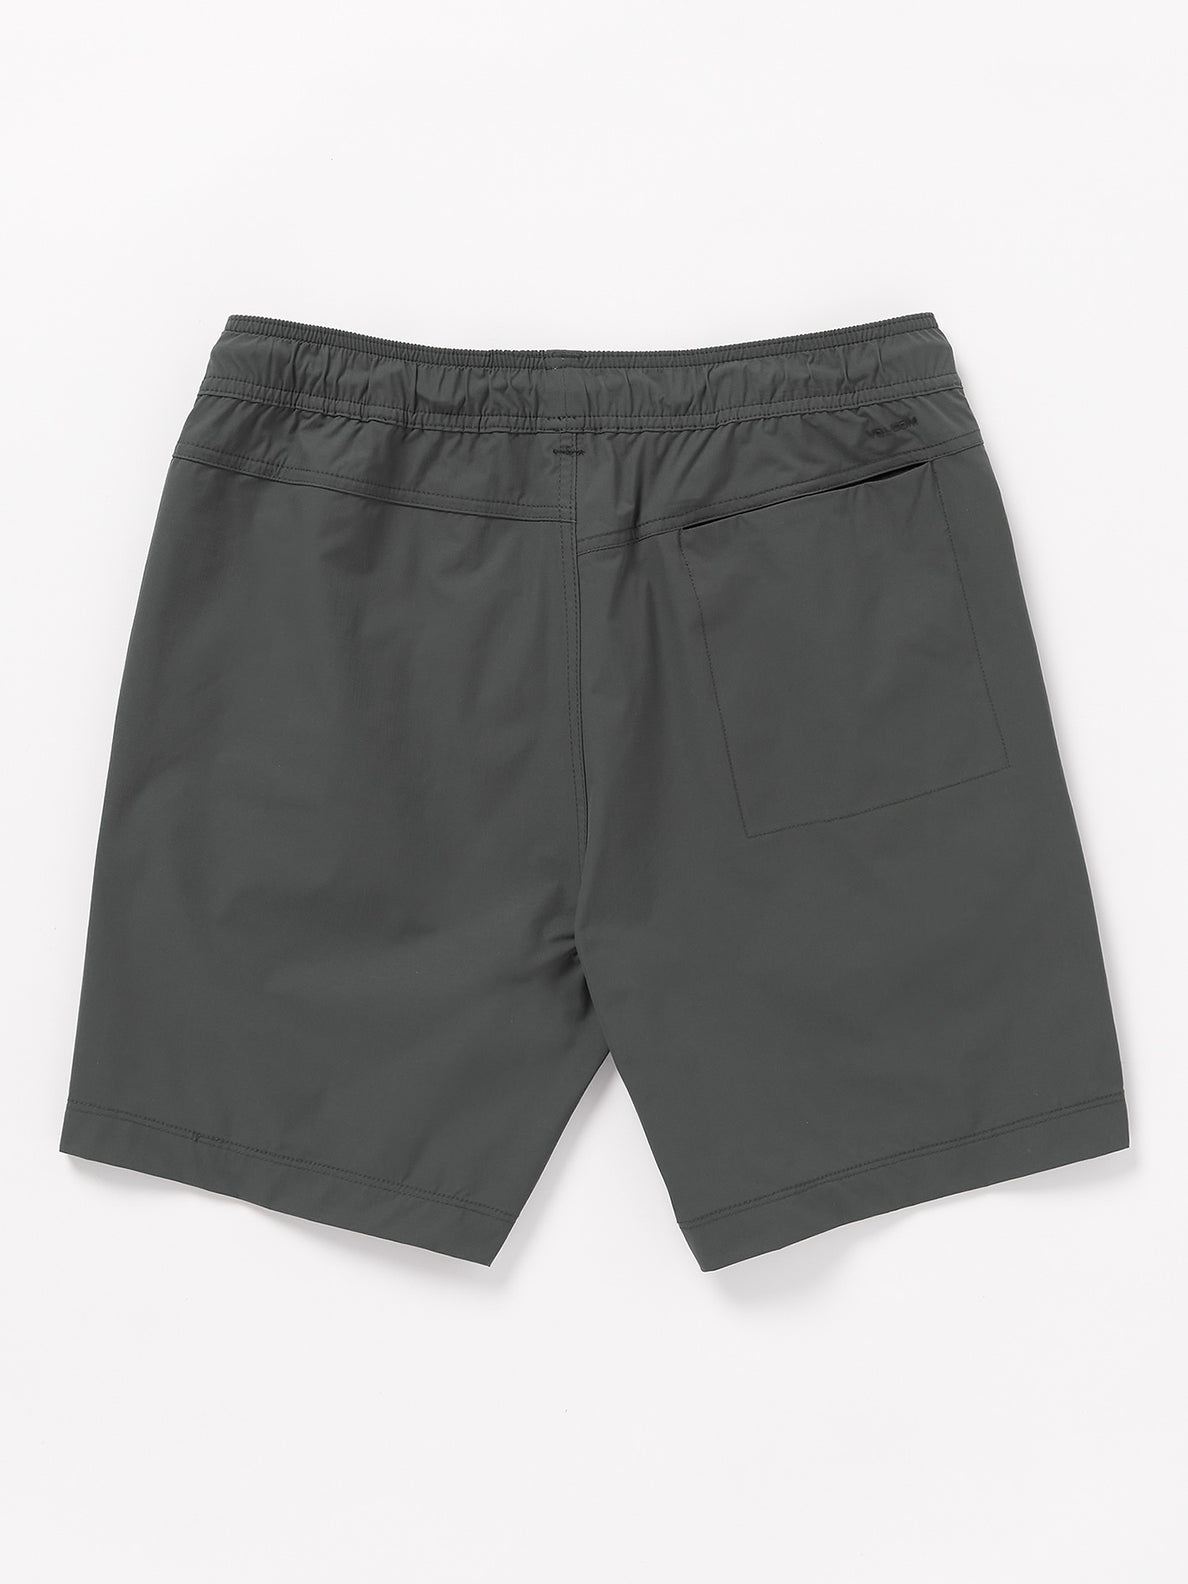 Hoxstop Elastic Waist Shorts - Asphalt Black